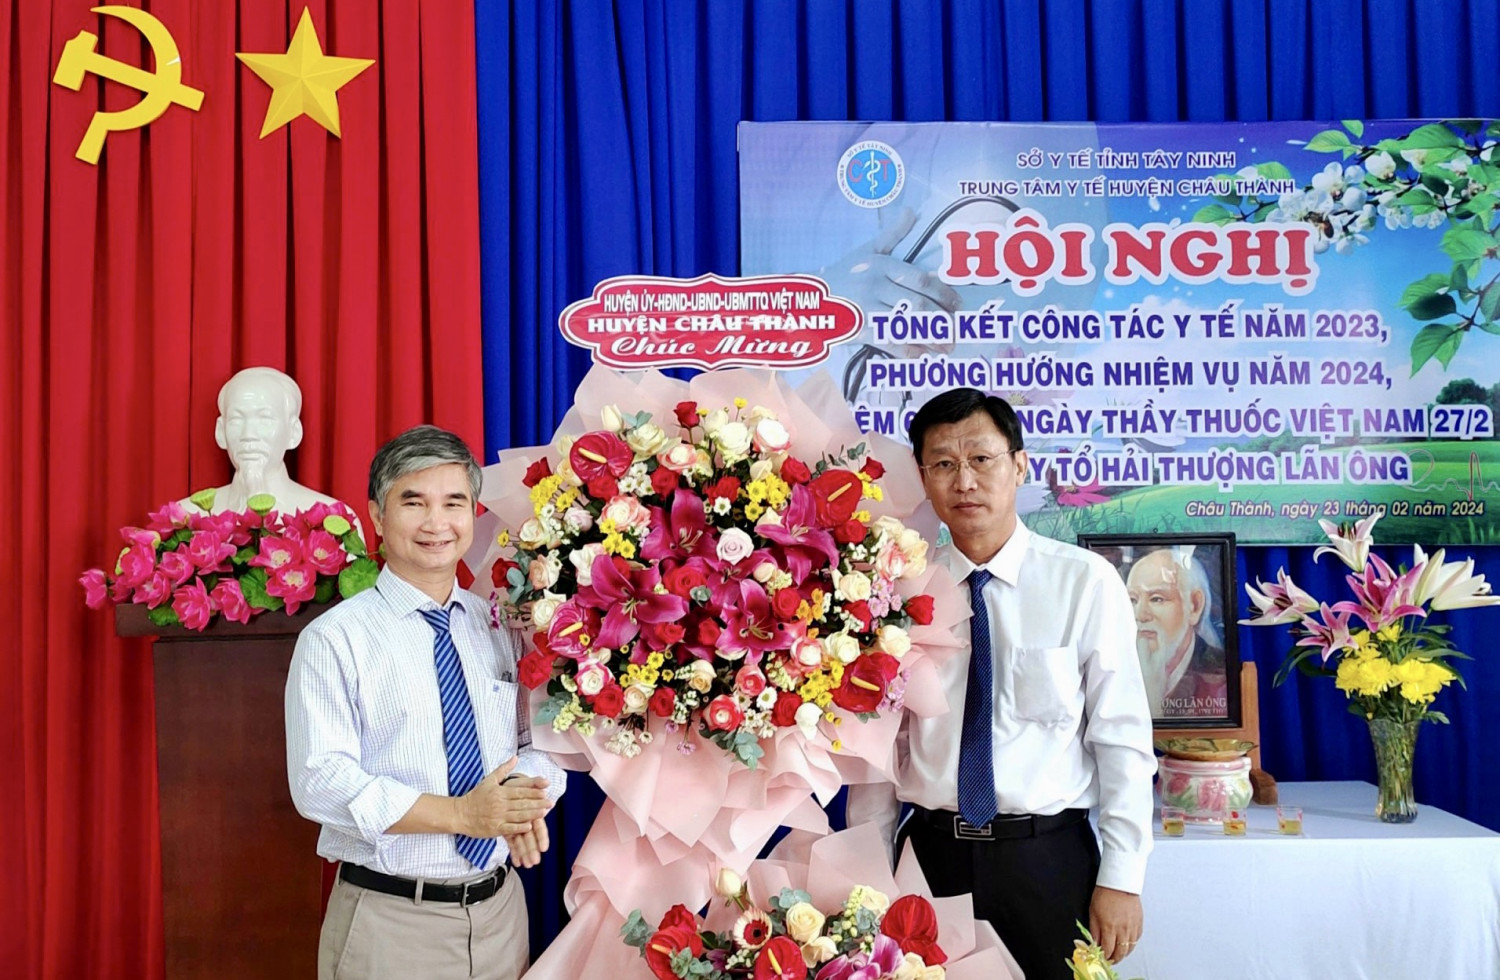 Châu Thành: Kỷ niệm 69 năm ngày thầy thuốc Việt Nam và tổng kết công tác y tế năm 2023